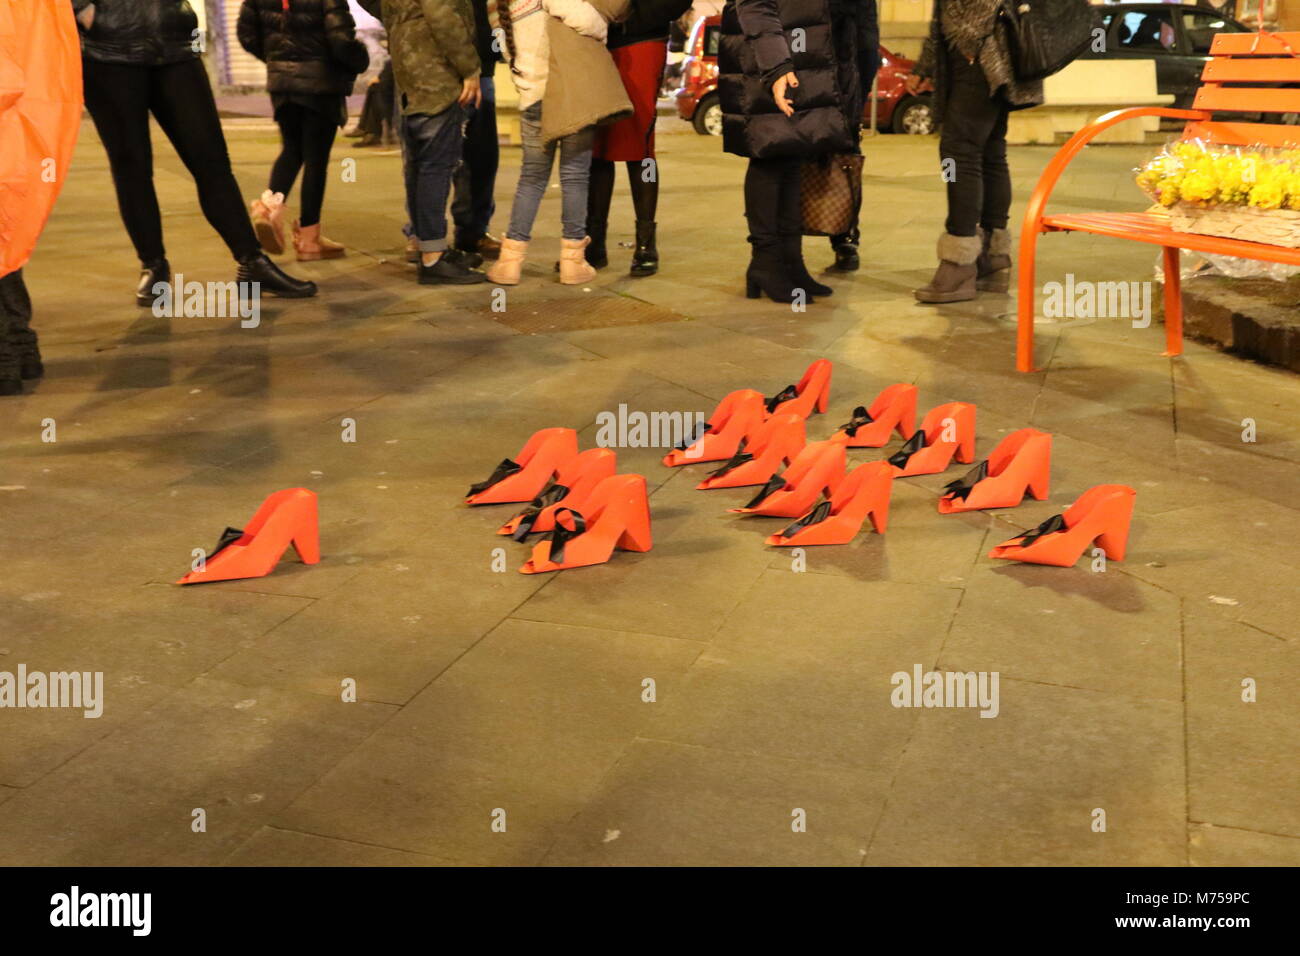 Arzano, Italia. 08 Mar, El Día Internacional la mujer en Arzano, la provincia de Nápoles. En la imagen zapatos rojos símbolo de feminidad contra femicidio simboliza las acciones para